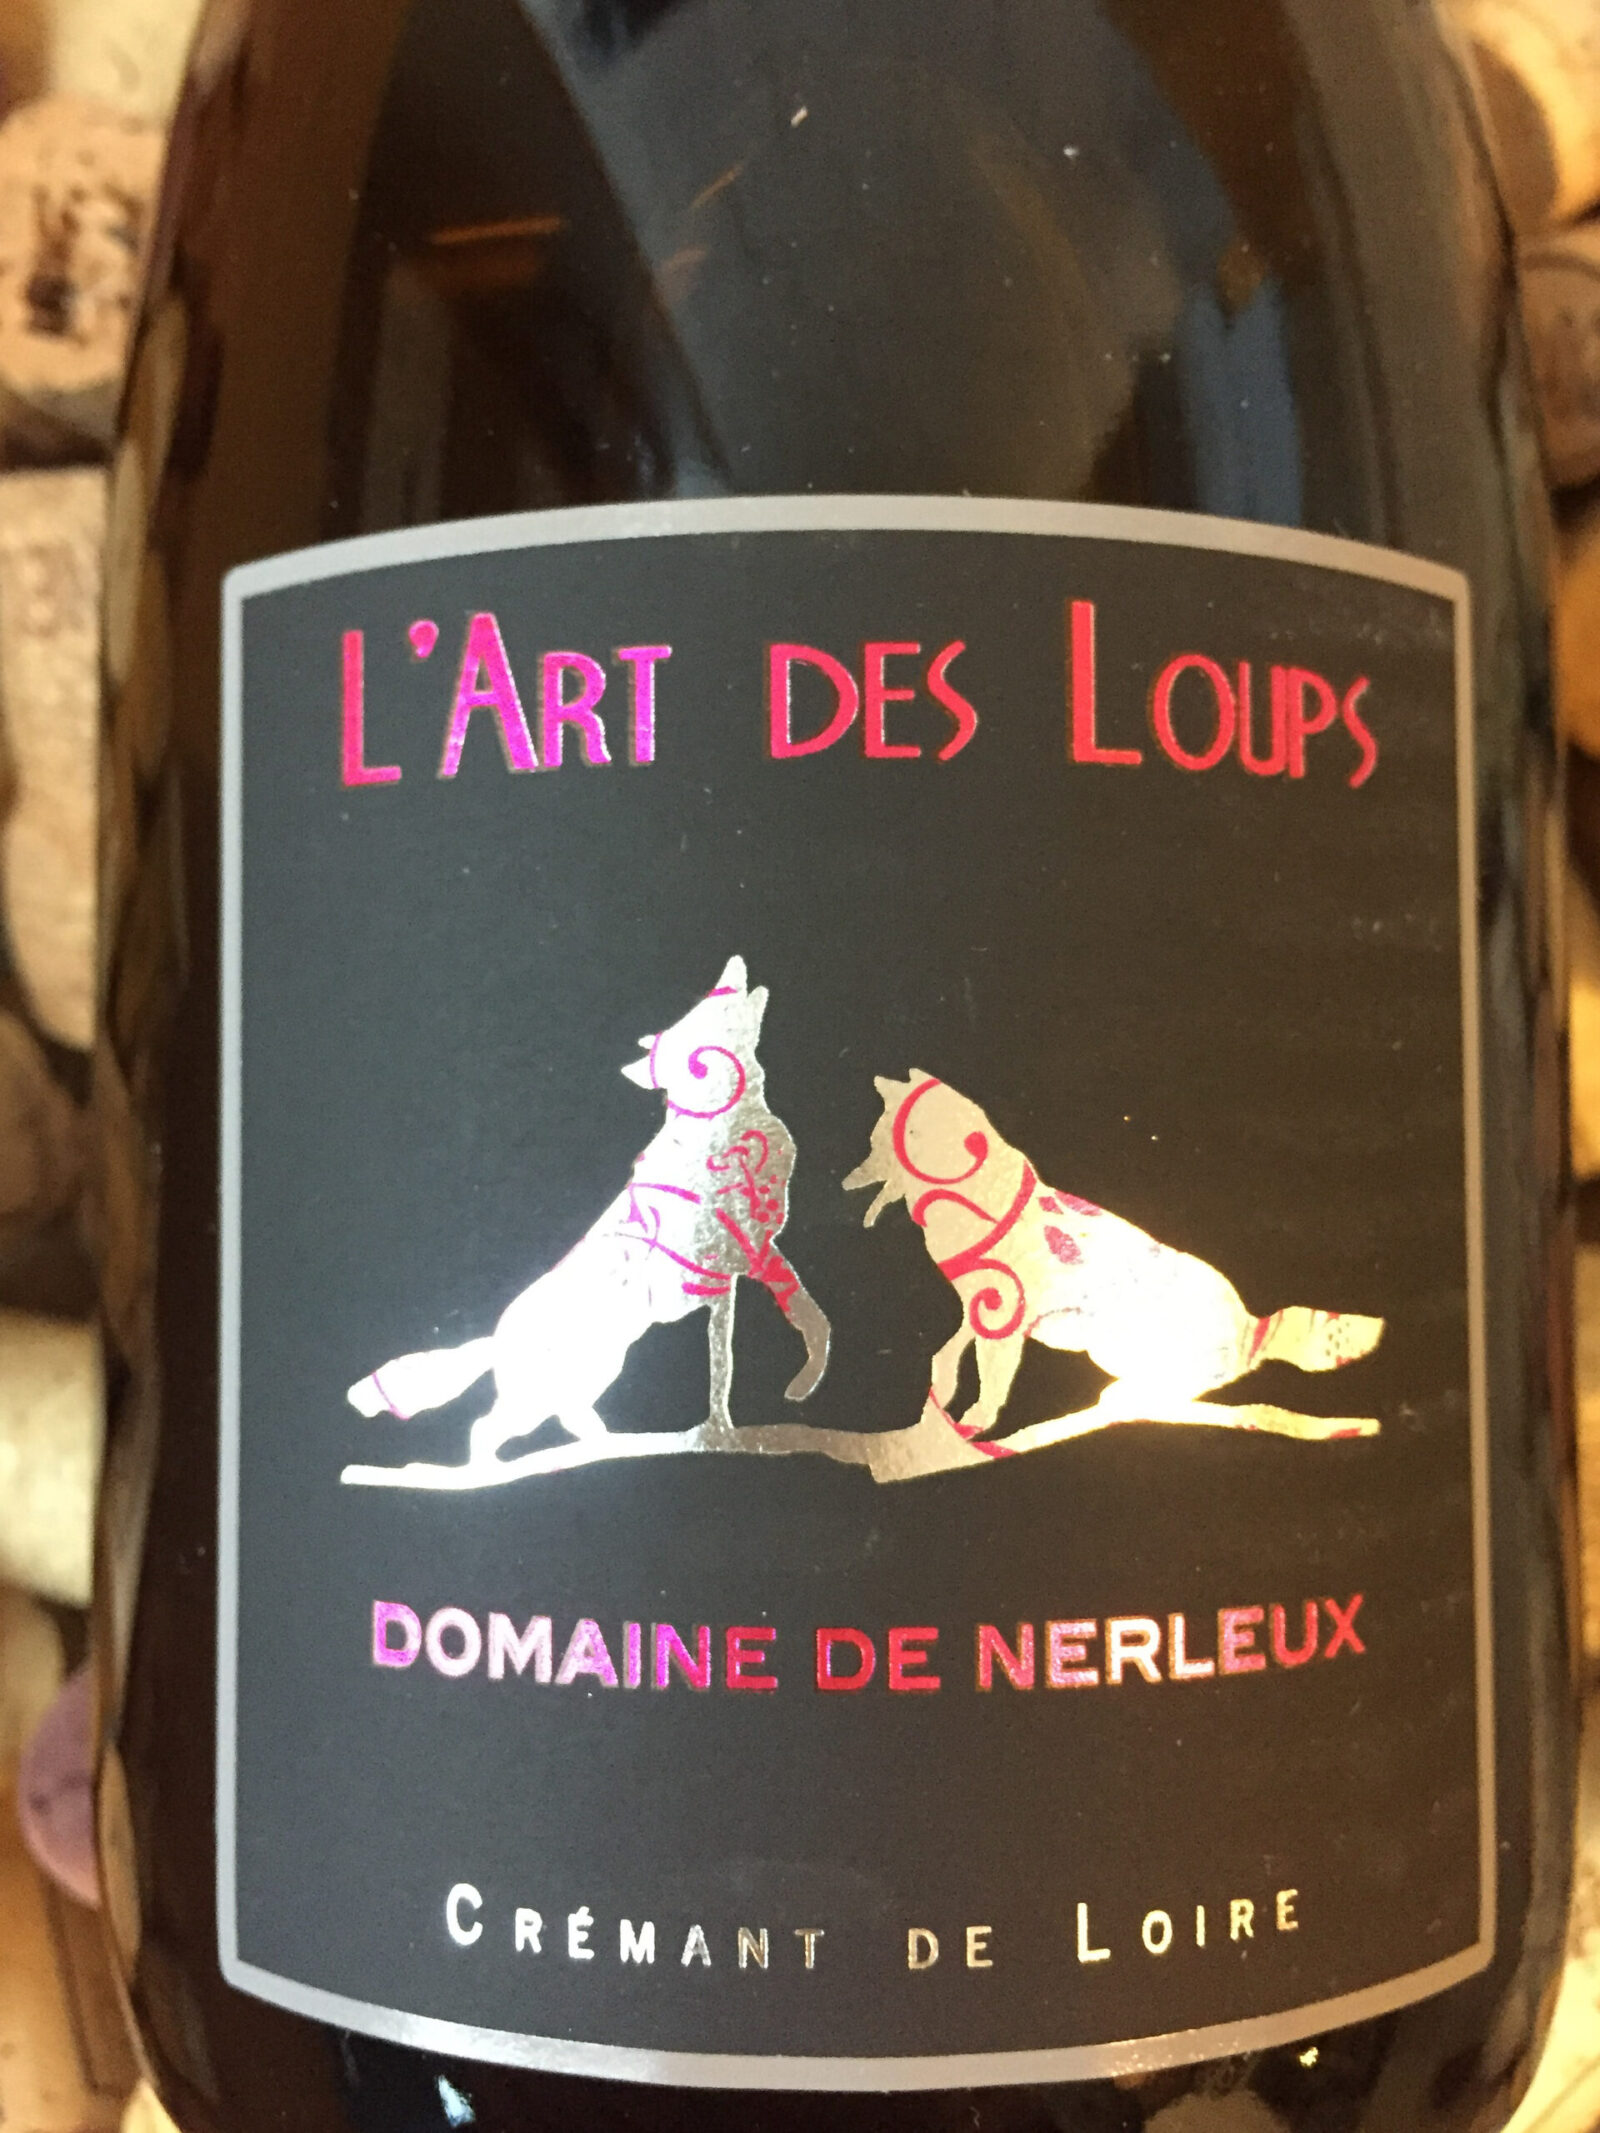 Domaine de Nerleux Cremant de Loire L'Art des Loups